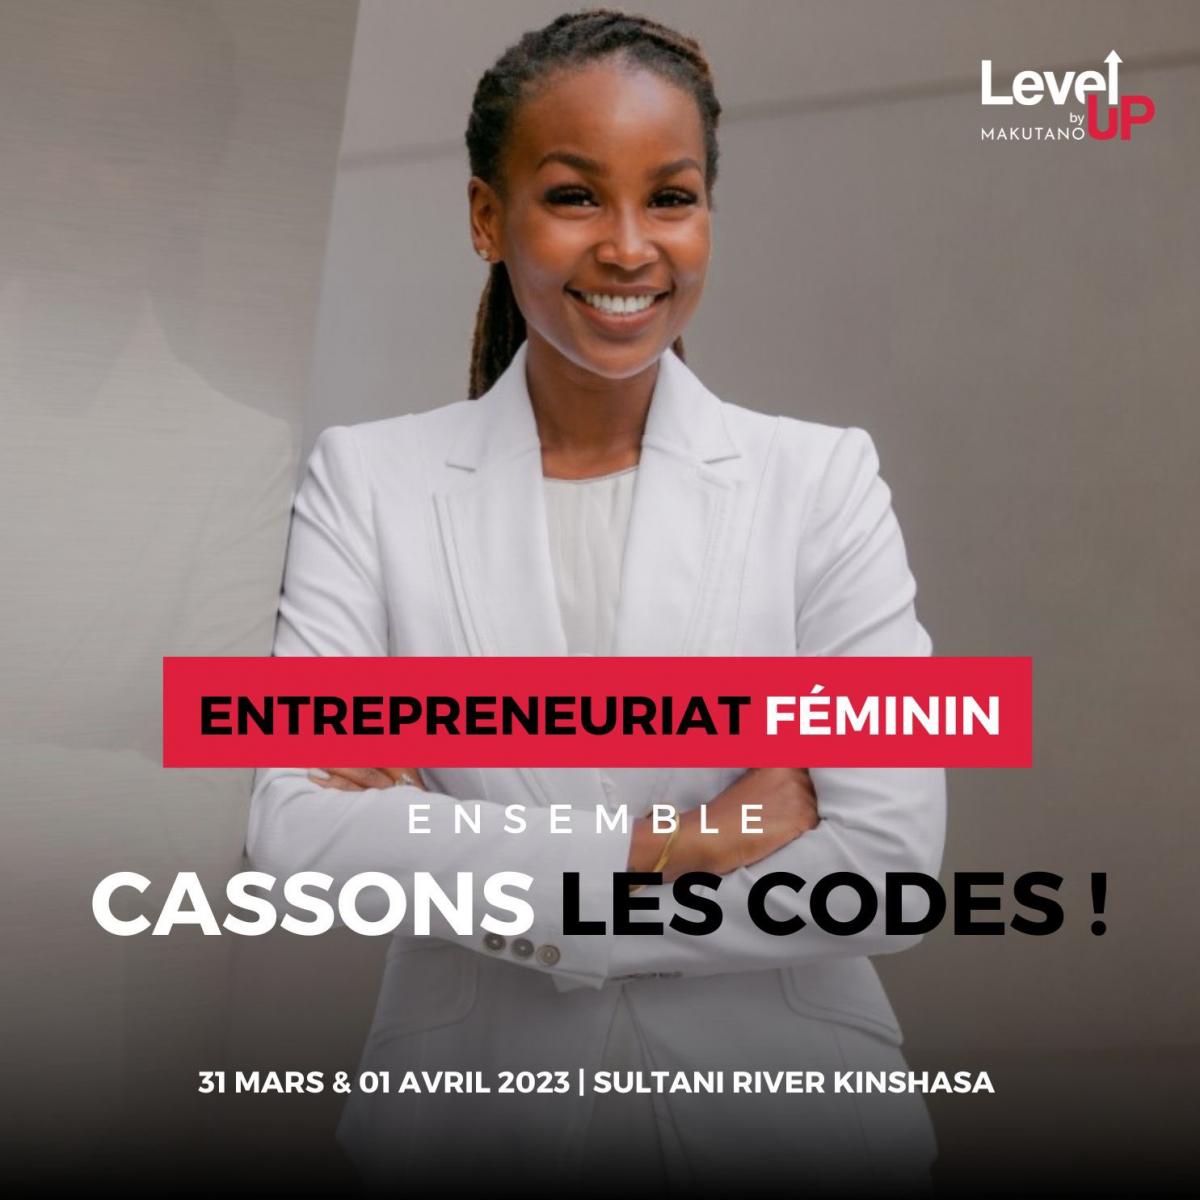 Level Up Makutano Le Forum Sur L Entreprenariat Féminin A Démarré Ce Vendredi à Kinshasa